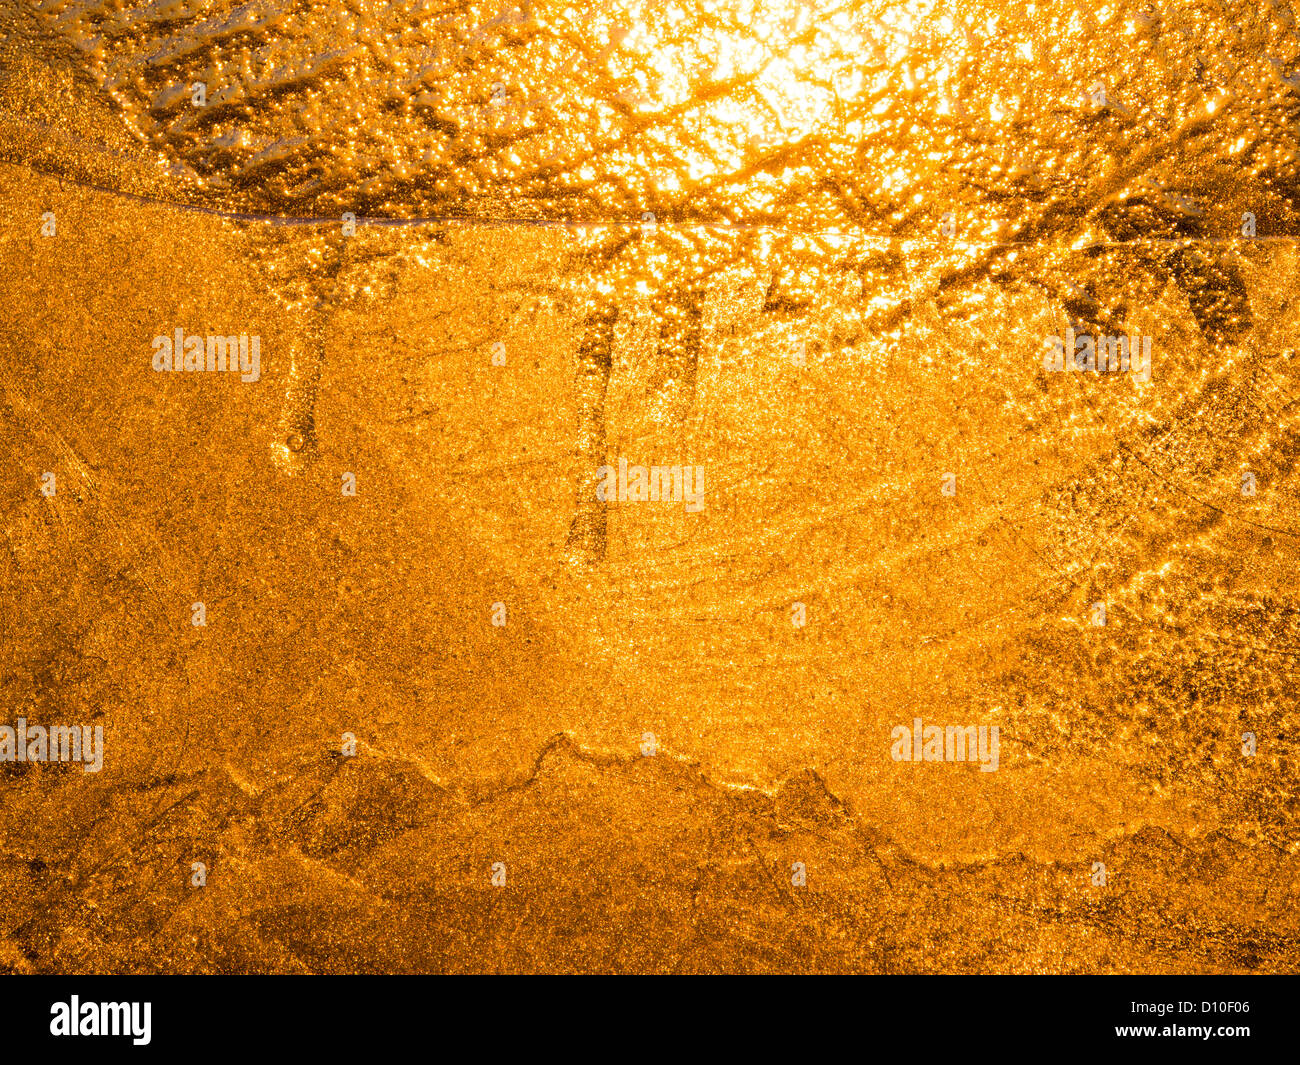 La lumière de soleil vu à travers une couche de glace. Banque D'Images